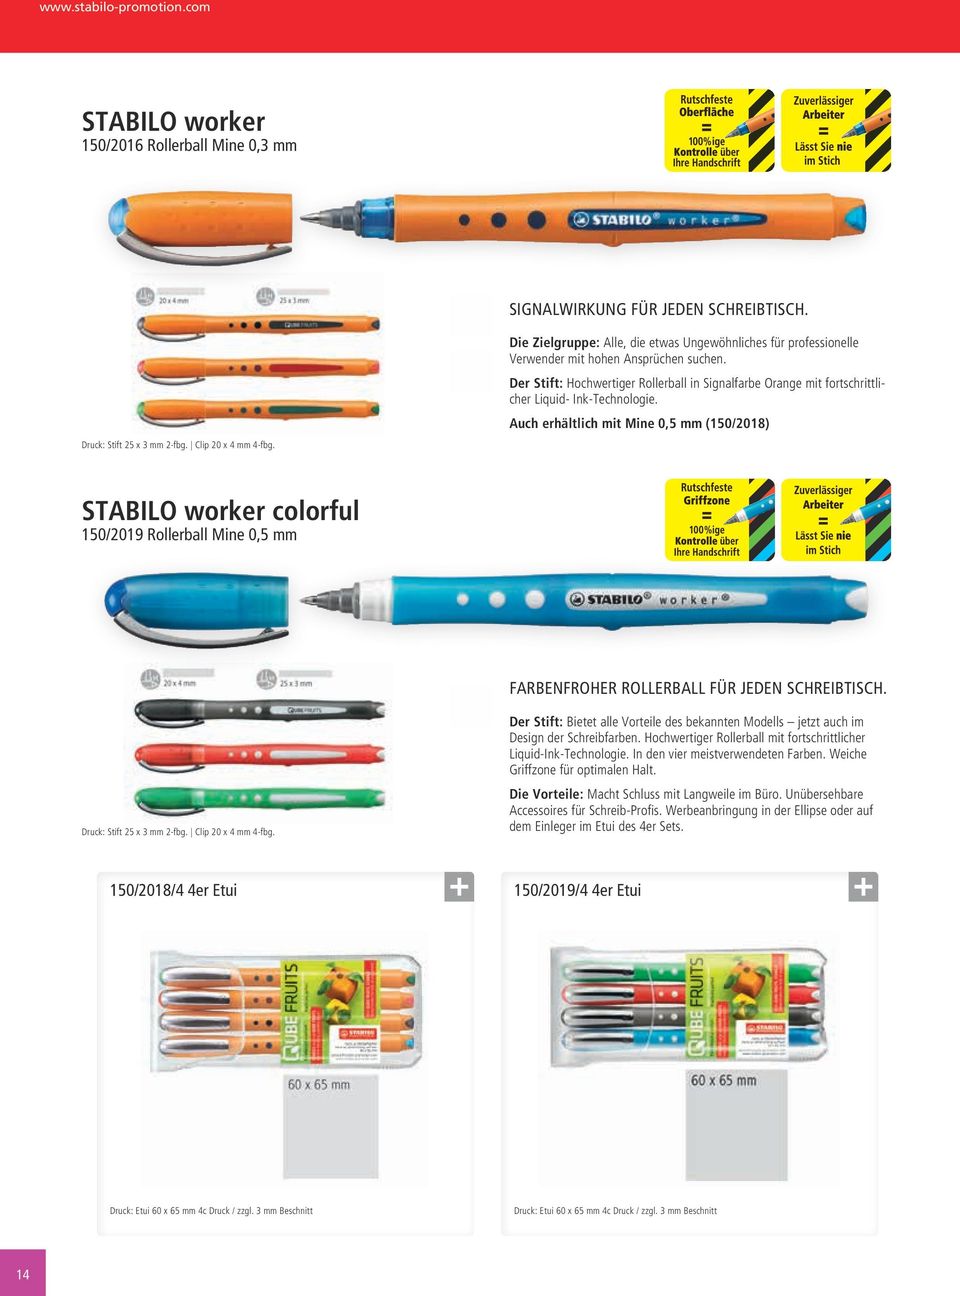 Der Stift: Hochwertiger Rollerball in Signalfarbe Orange mit fortschrittlicher Liquid- Ink-Technologie.